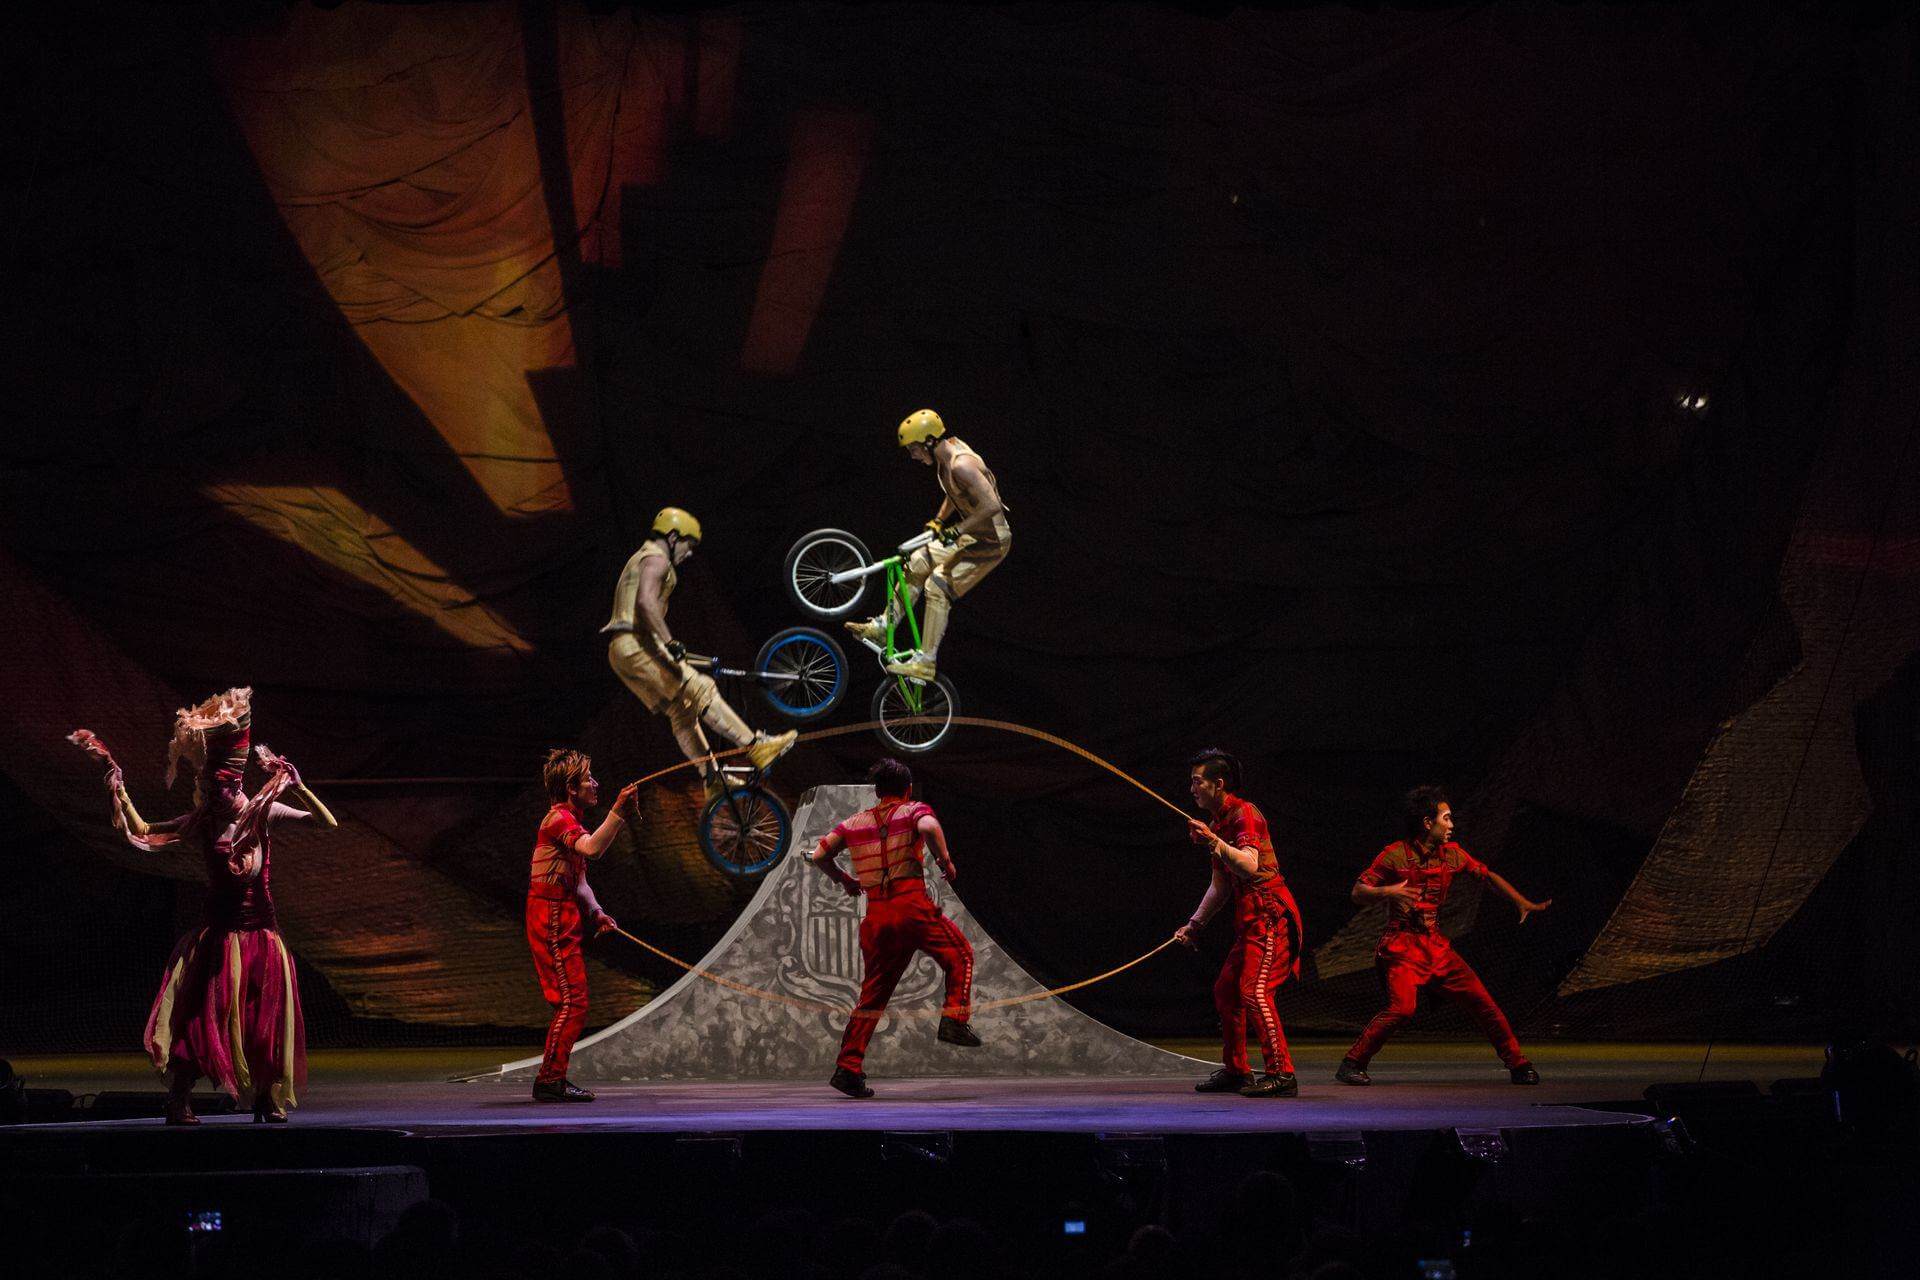 Scalada by Cirque du Soleil 2013: Acrobacias con bicicletas